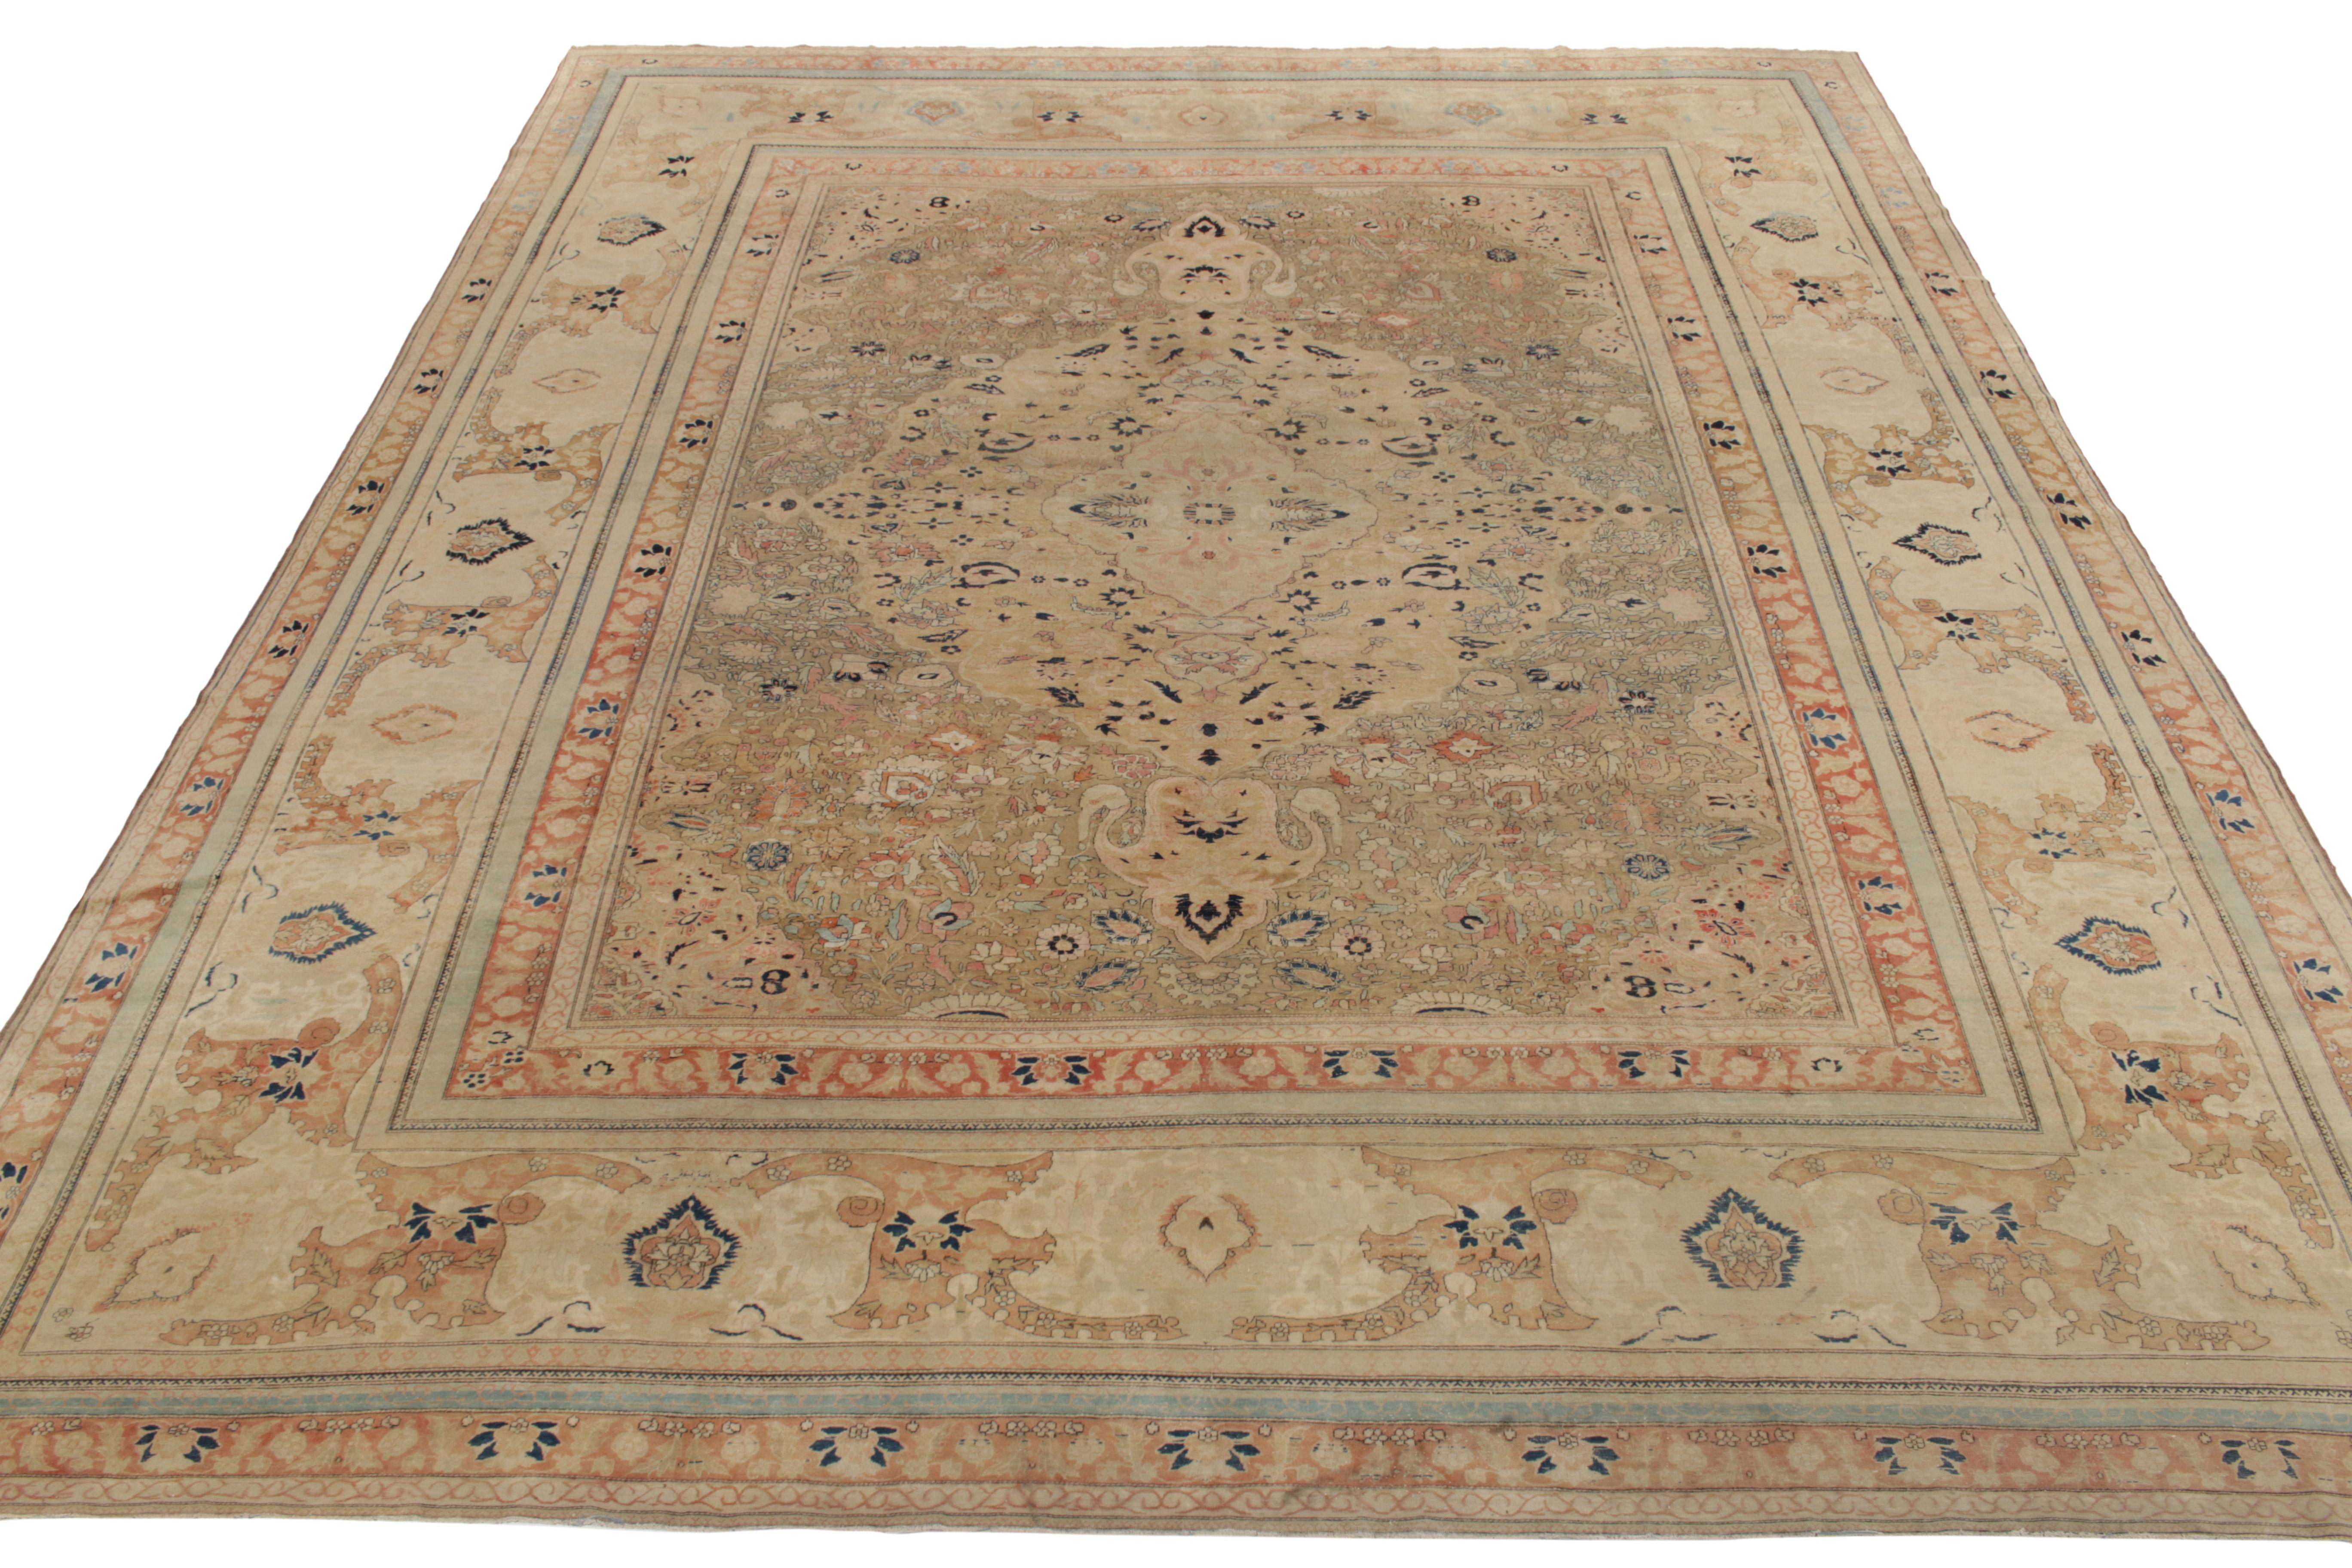 Handgeknüpft in Wolle um 1890, 1900, einer der feinsten antiken Mohtashem Kashan Teppiche, die jemals in unsere Antique & Vintage Persian rug Linien aufgenommen wurden. Ein sammelwürdiges, vielseitiges 12x15 in tadellosem Zustand, dieses besondere